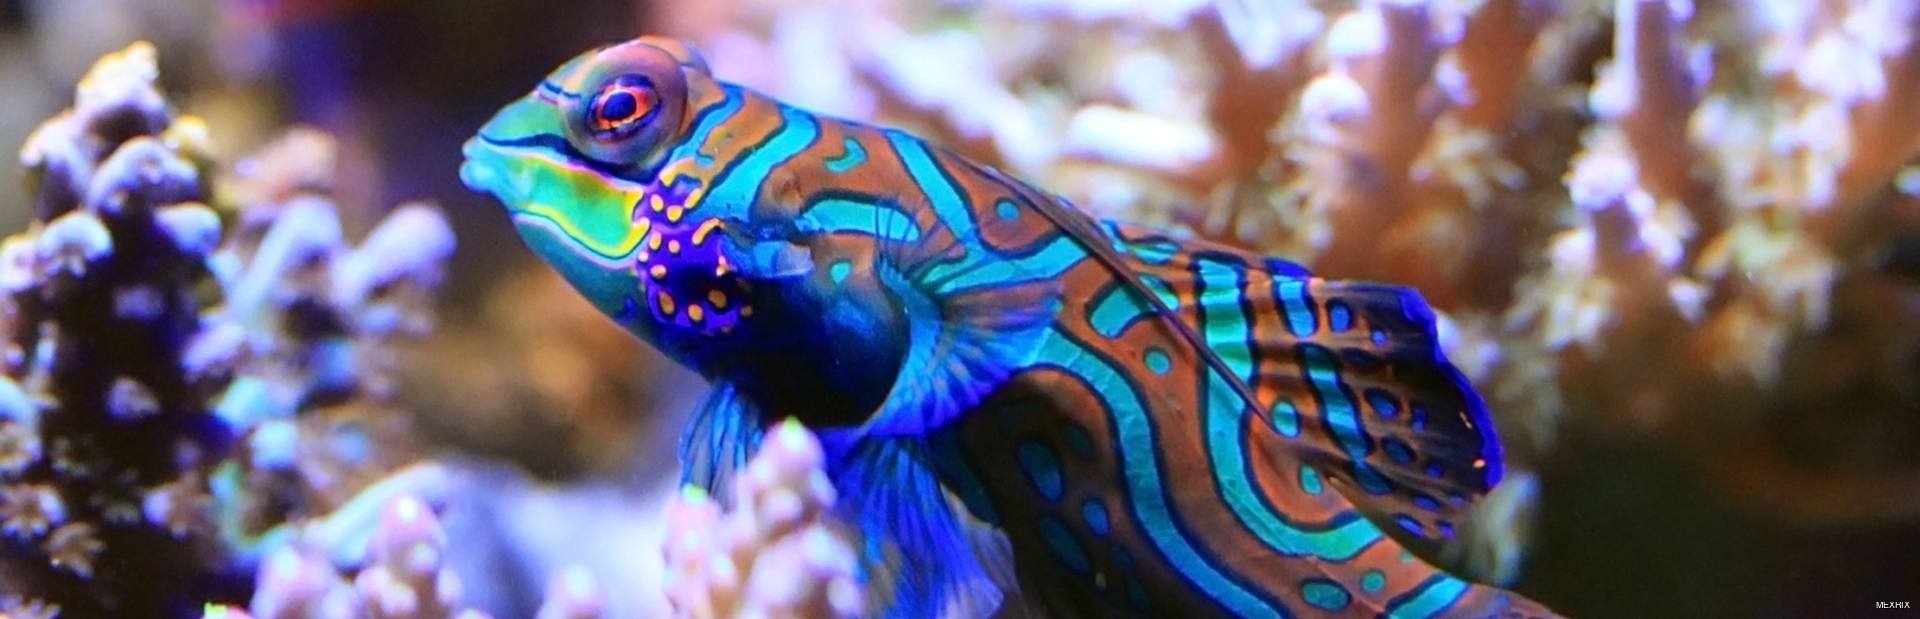 Mandarin fish in aquarium with real coral reef